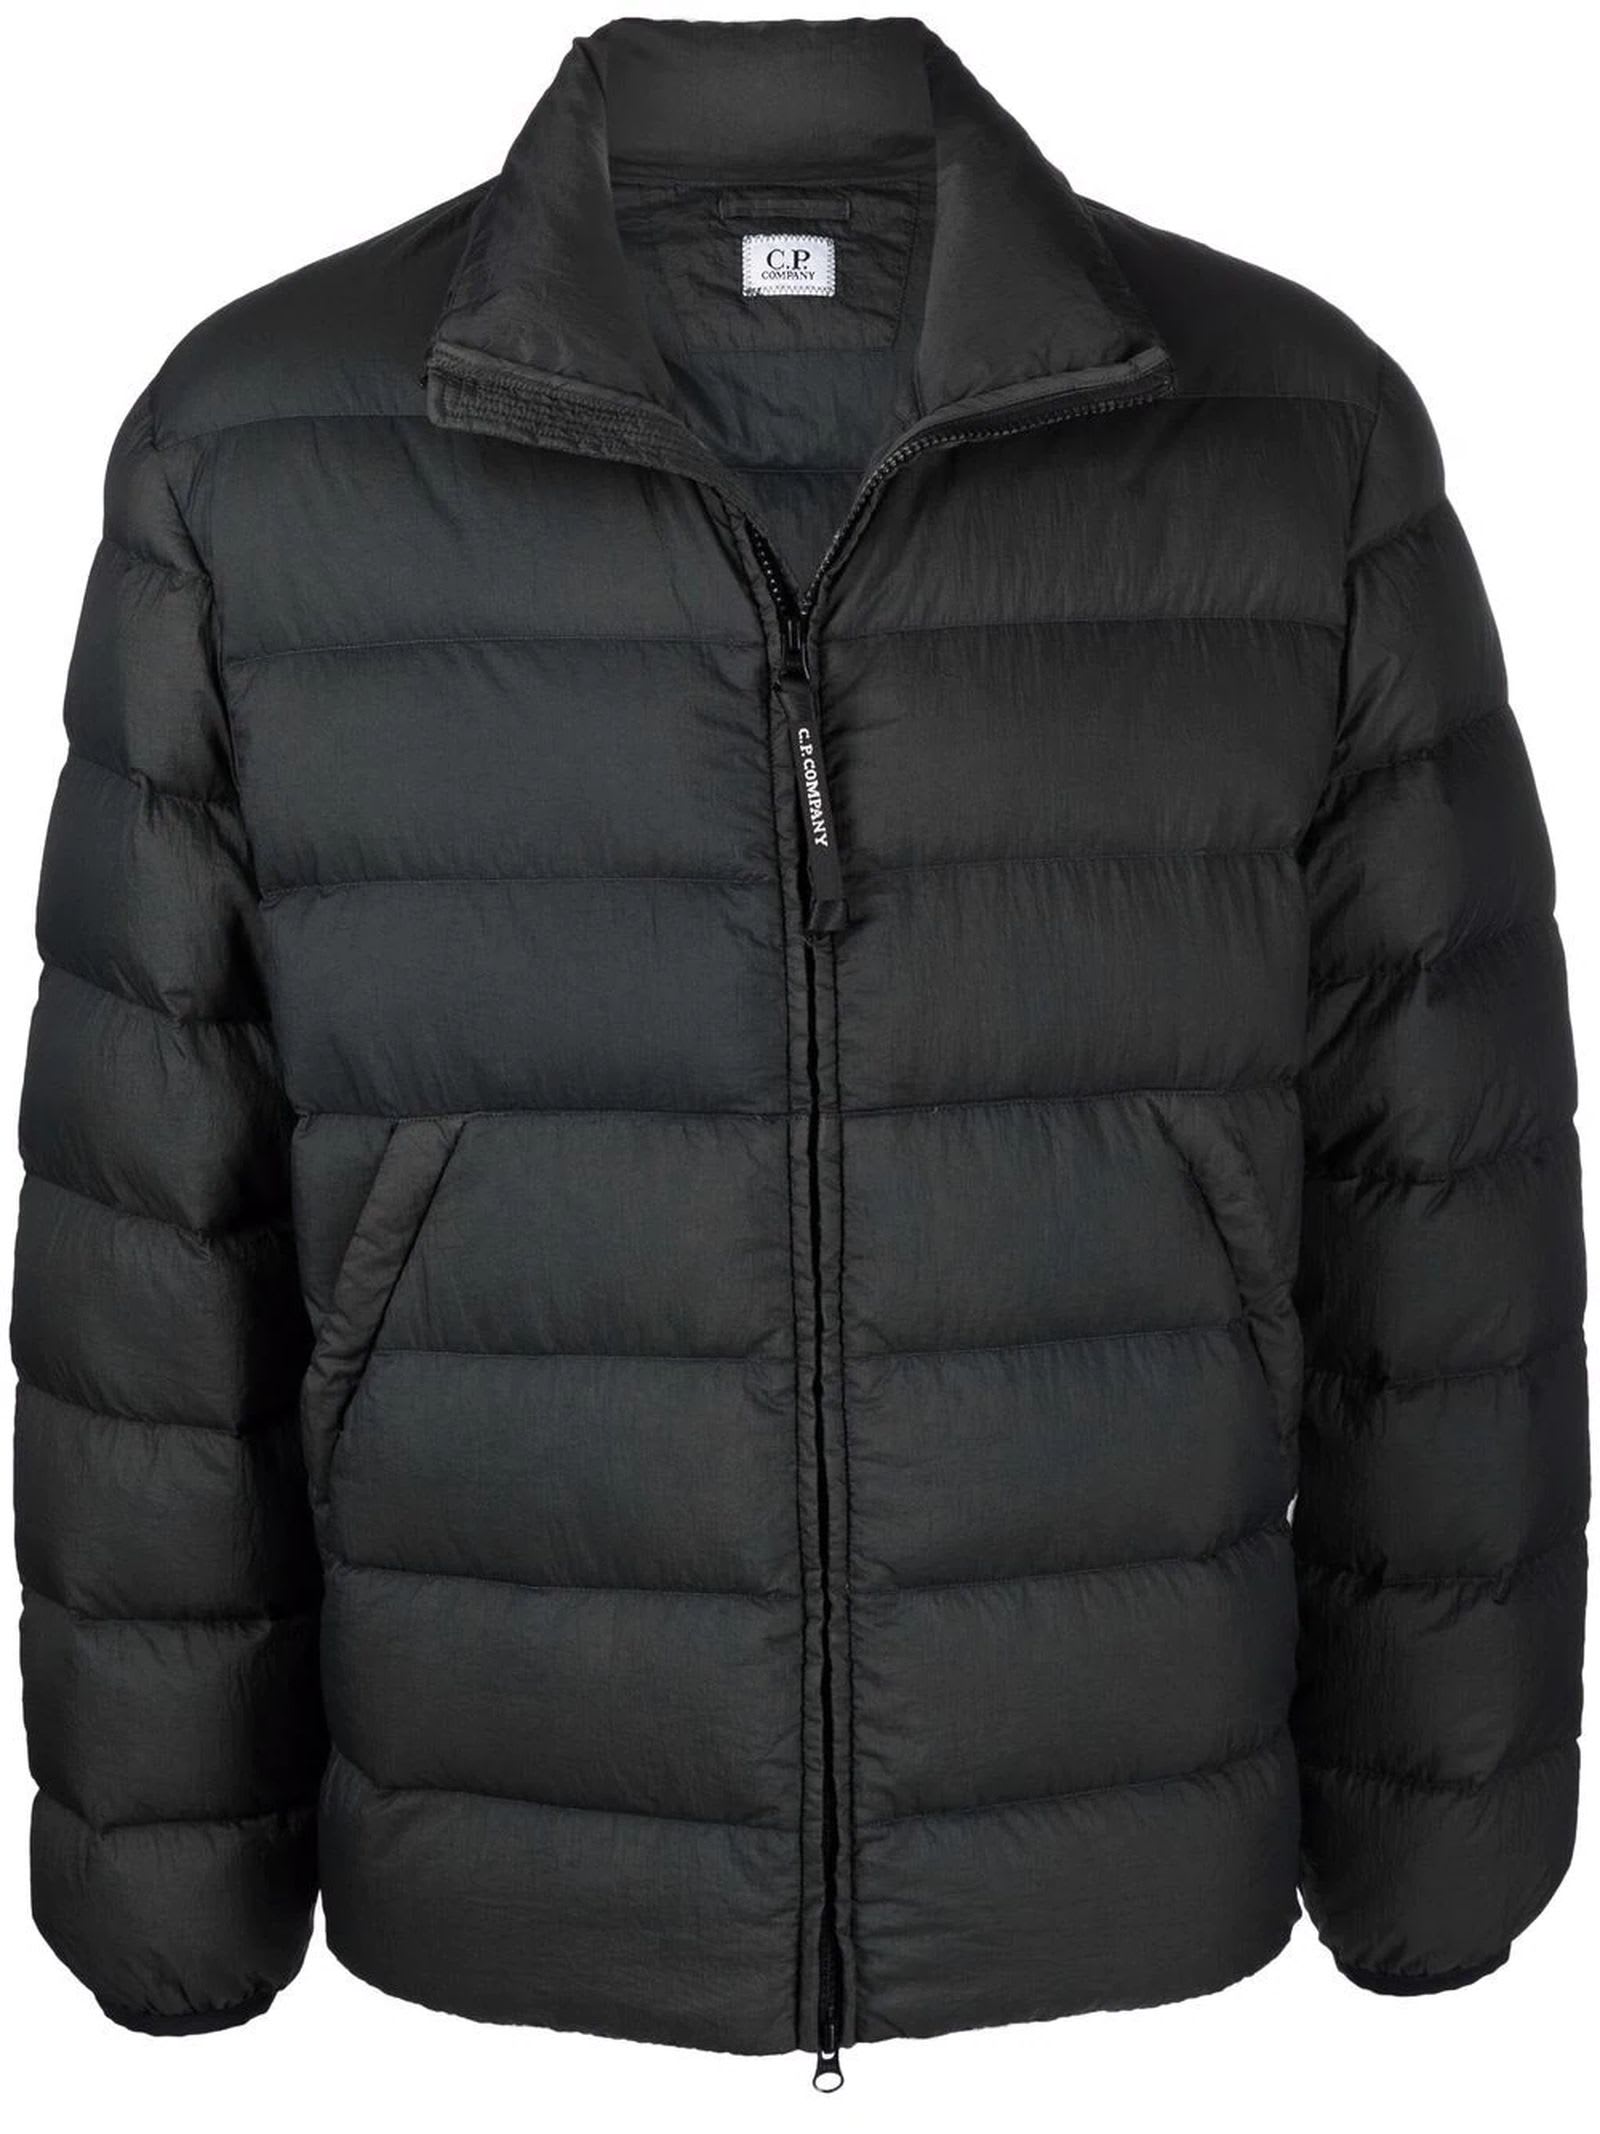 C.P. Company Black Weather-resistant Nylon Jacket